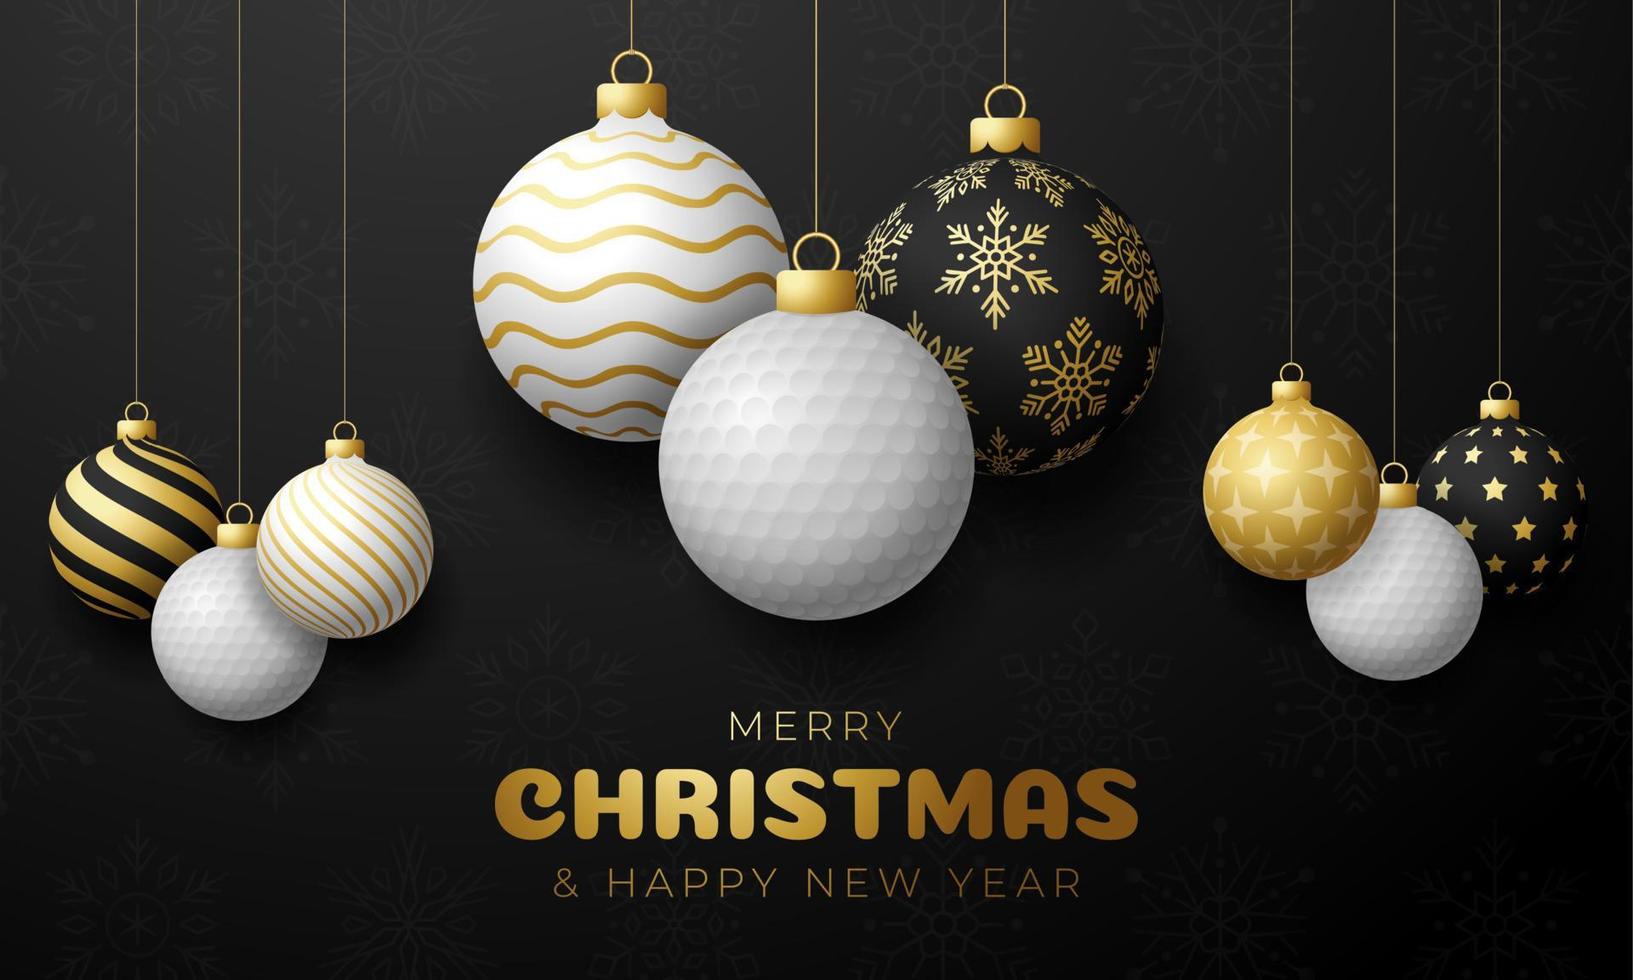 cartão de Natal de golfe. cartão do esporte feliz Natal. pendurar em uma bola de golfe de segmento como uma bola de Natal e bugiganga dourada sobre fundo preto horizontal. ilustração em vetor esporte.